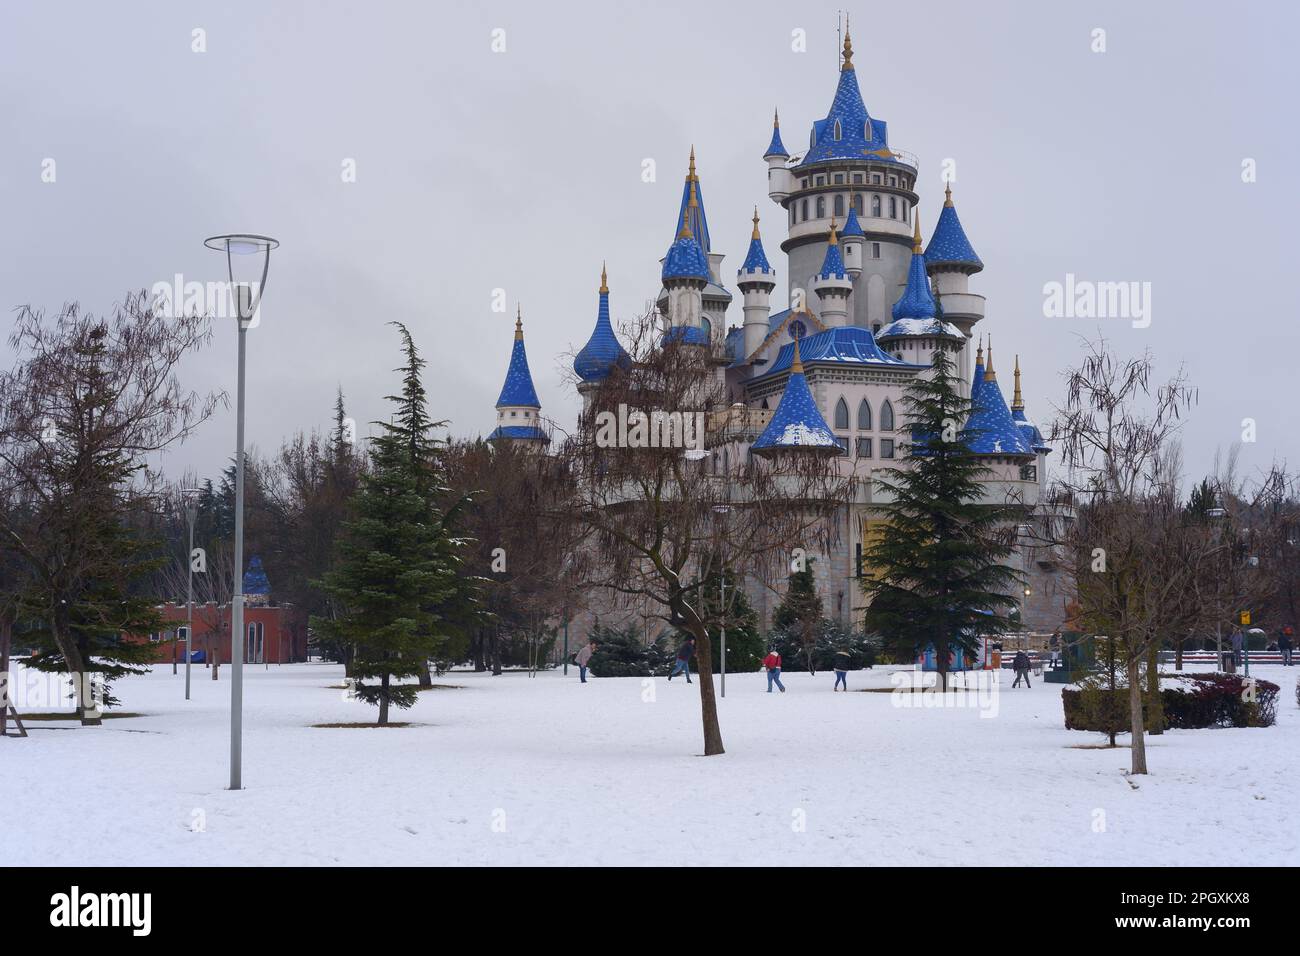 Nostalgische alte Burg im Sazova Park Eskisehir mit blauen Türmen. Unter Schnee an einem kalten Wintertag mit Bäumen und Büschen unter Schnee. Stockfoto